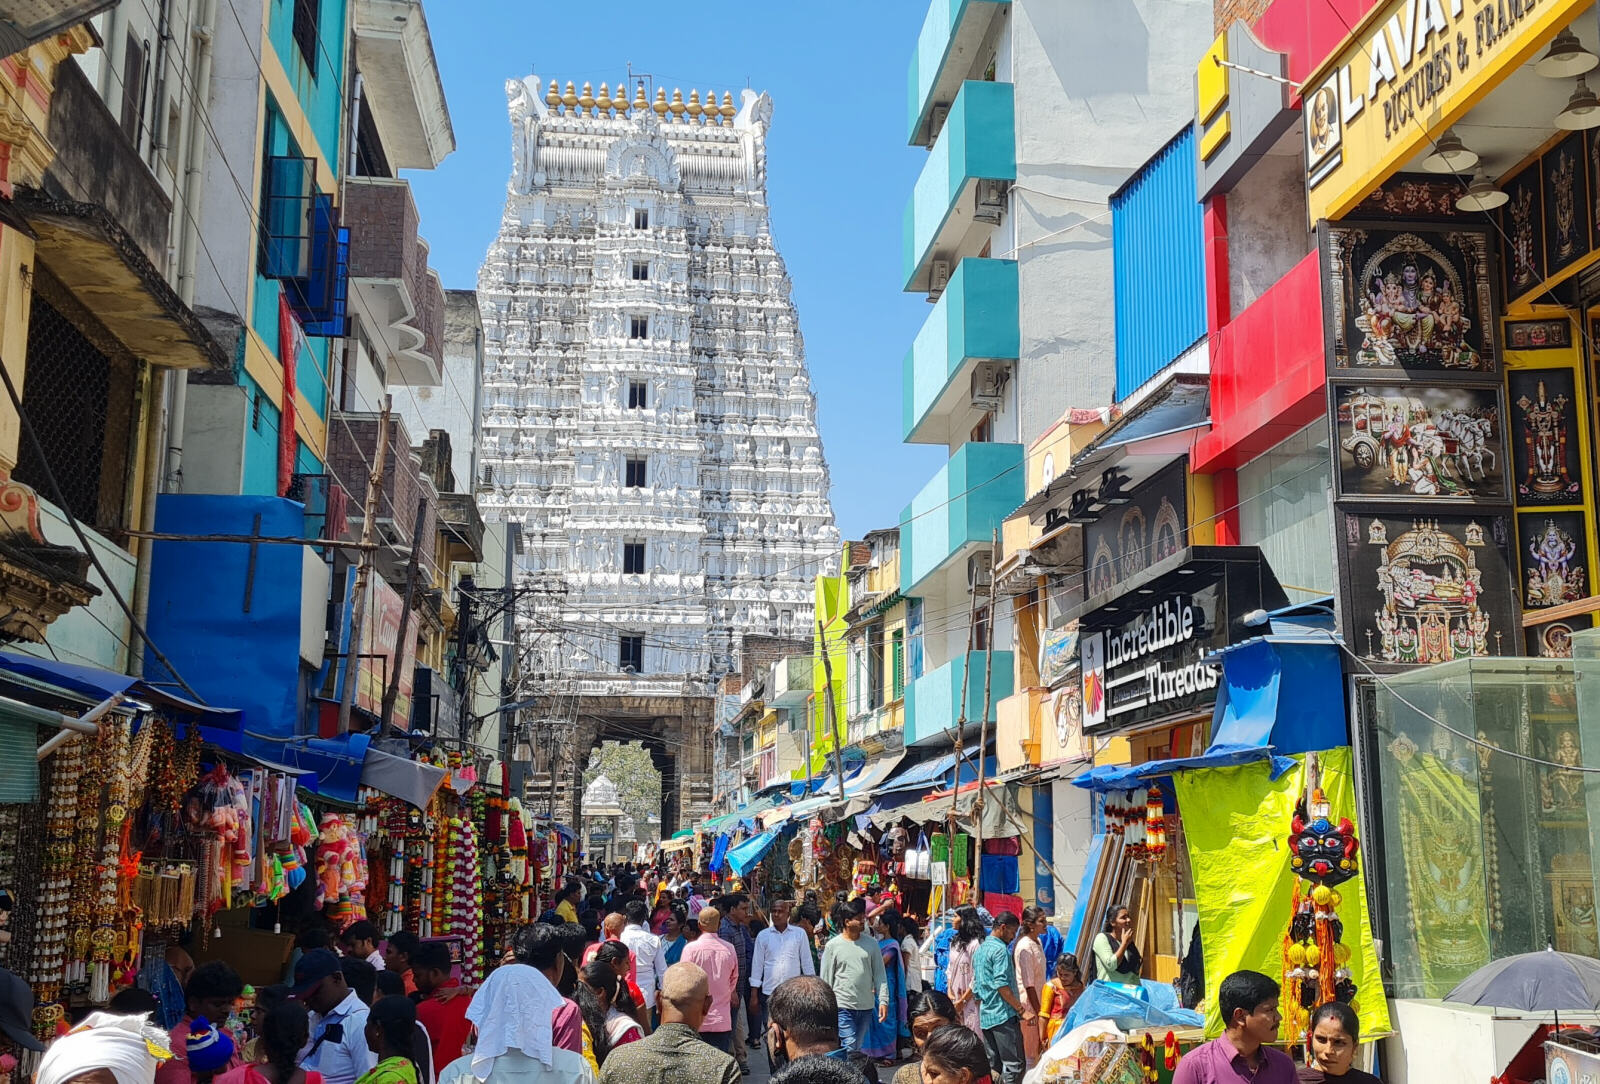 Gopuram (gateway) to the Govindaraja temple in Tirupati